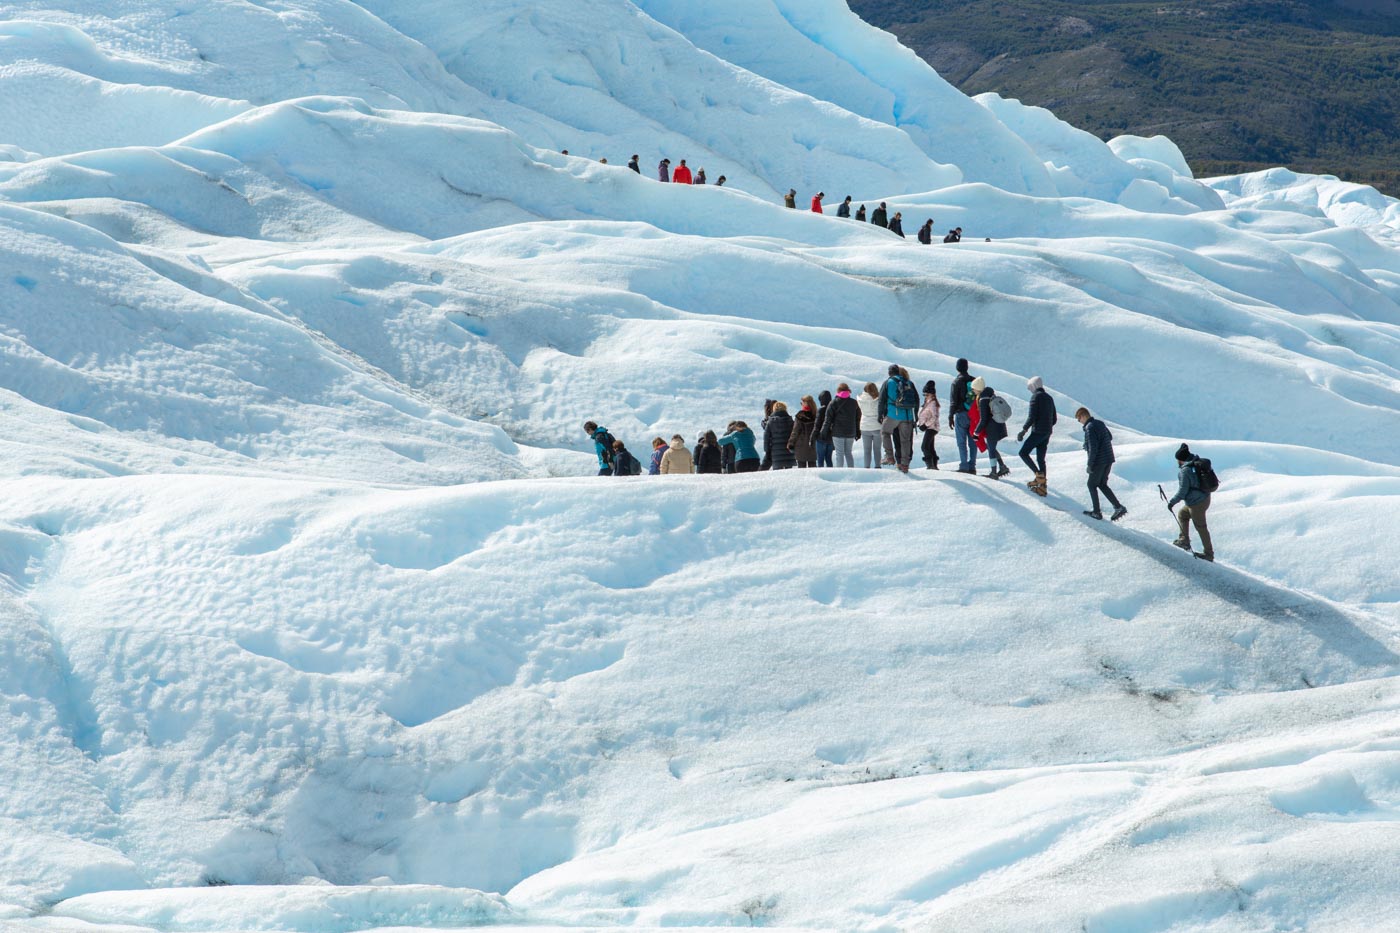 Moreno Glacier, Argentina.